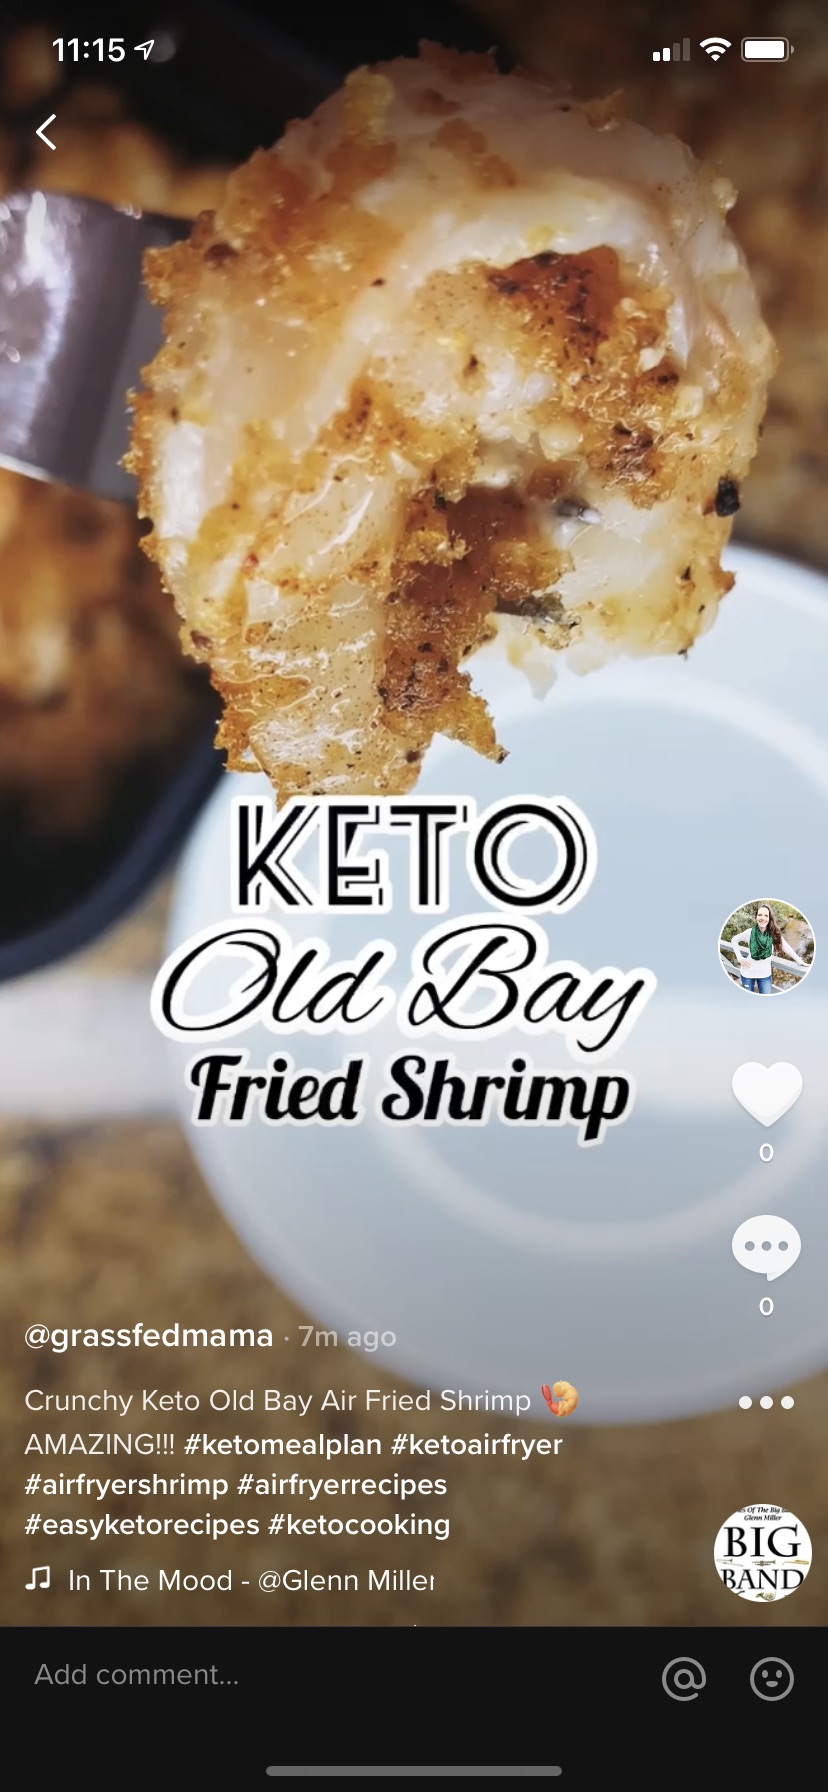 Keto Old Bay Air Fried Shrimp